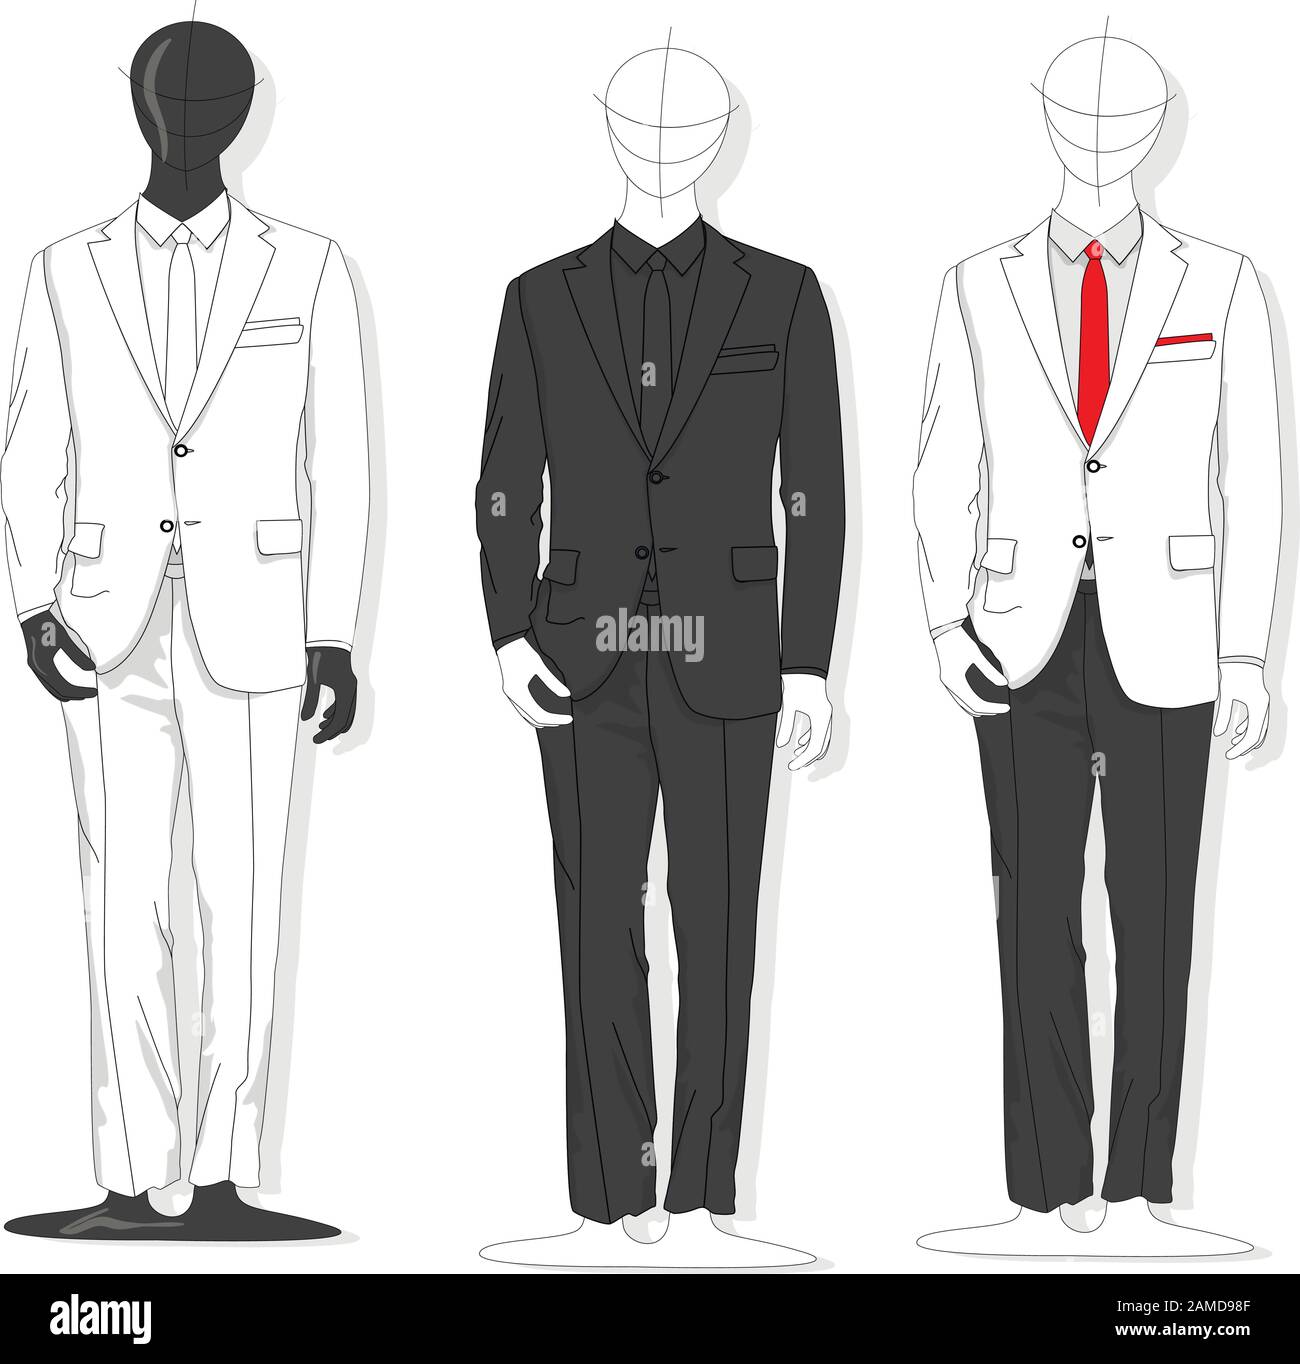 Fashion illustration, sartorial, men's fashion, blue suit, suit up |  Illustrazioni di moda, Idee di moda, Vestiti da uomo